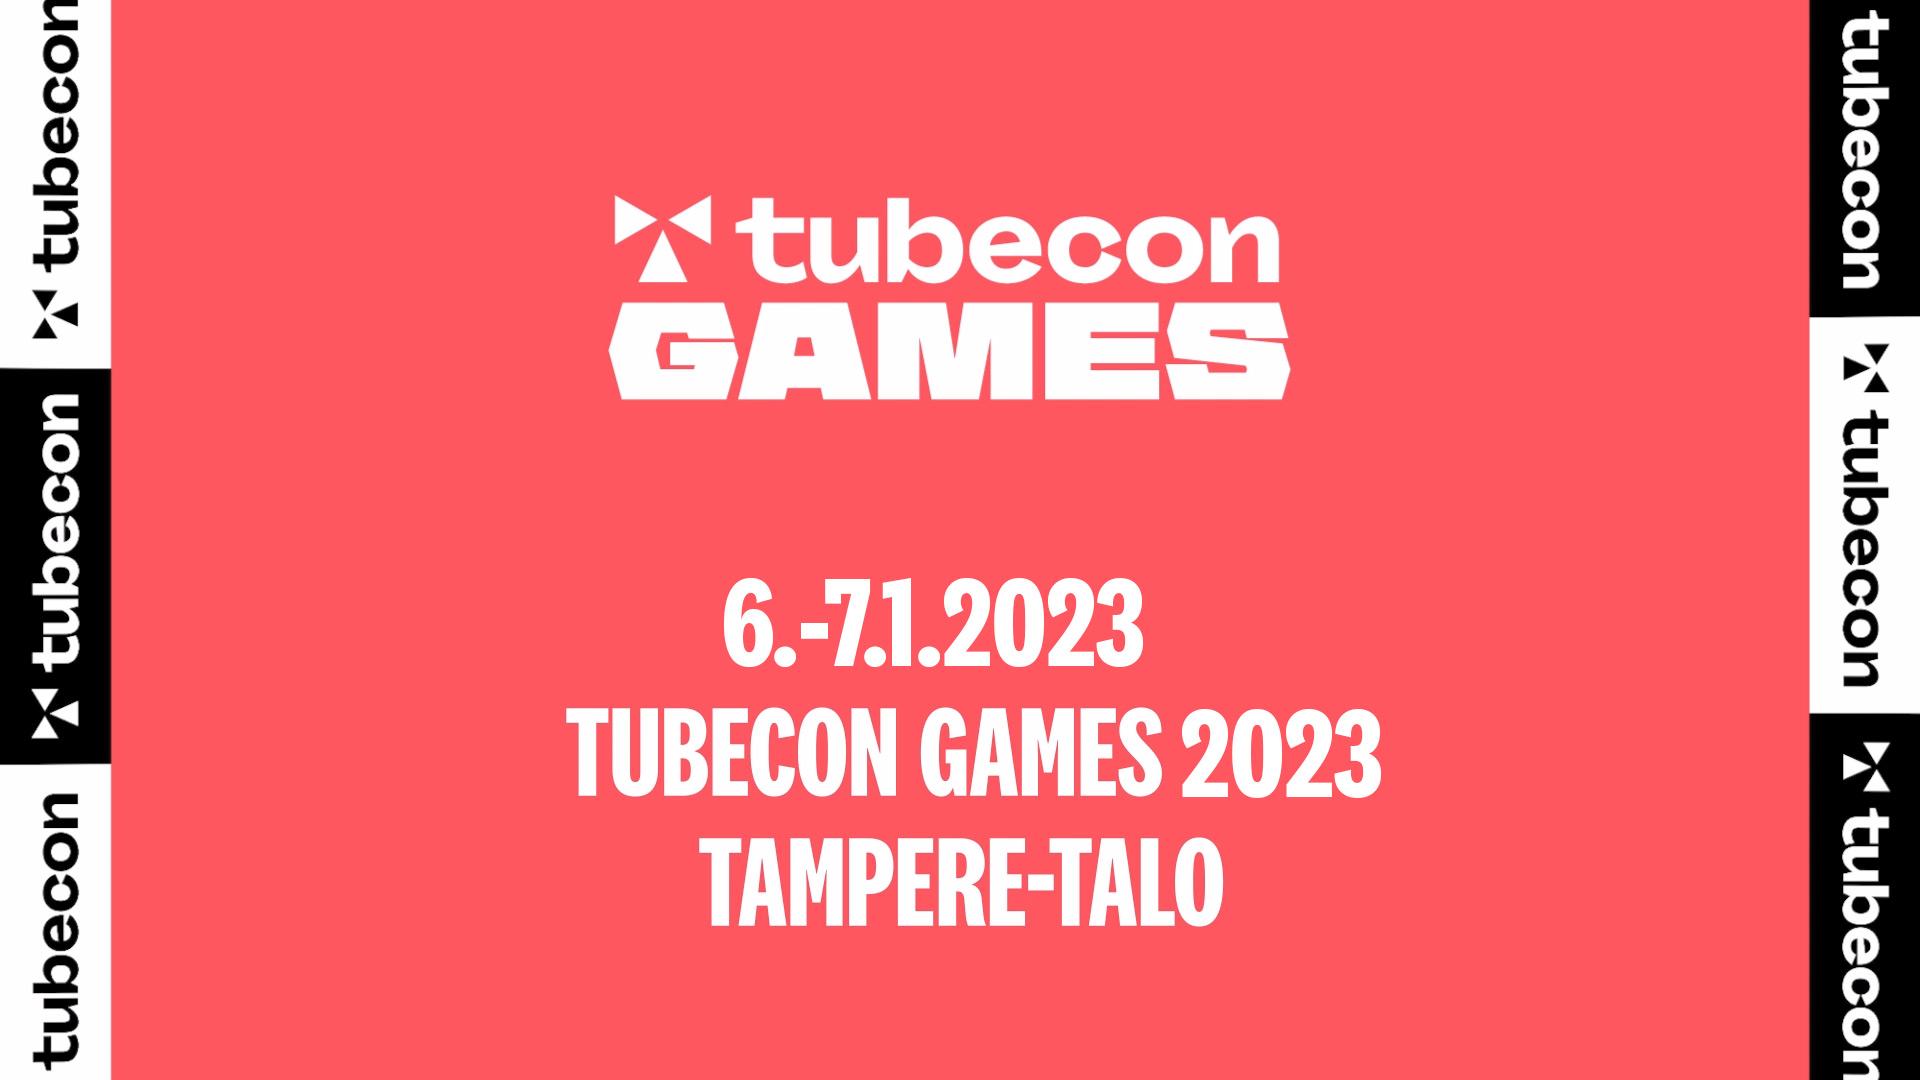 tubecon-games2023-poster.jpg